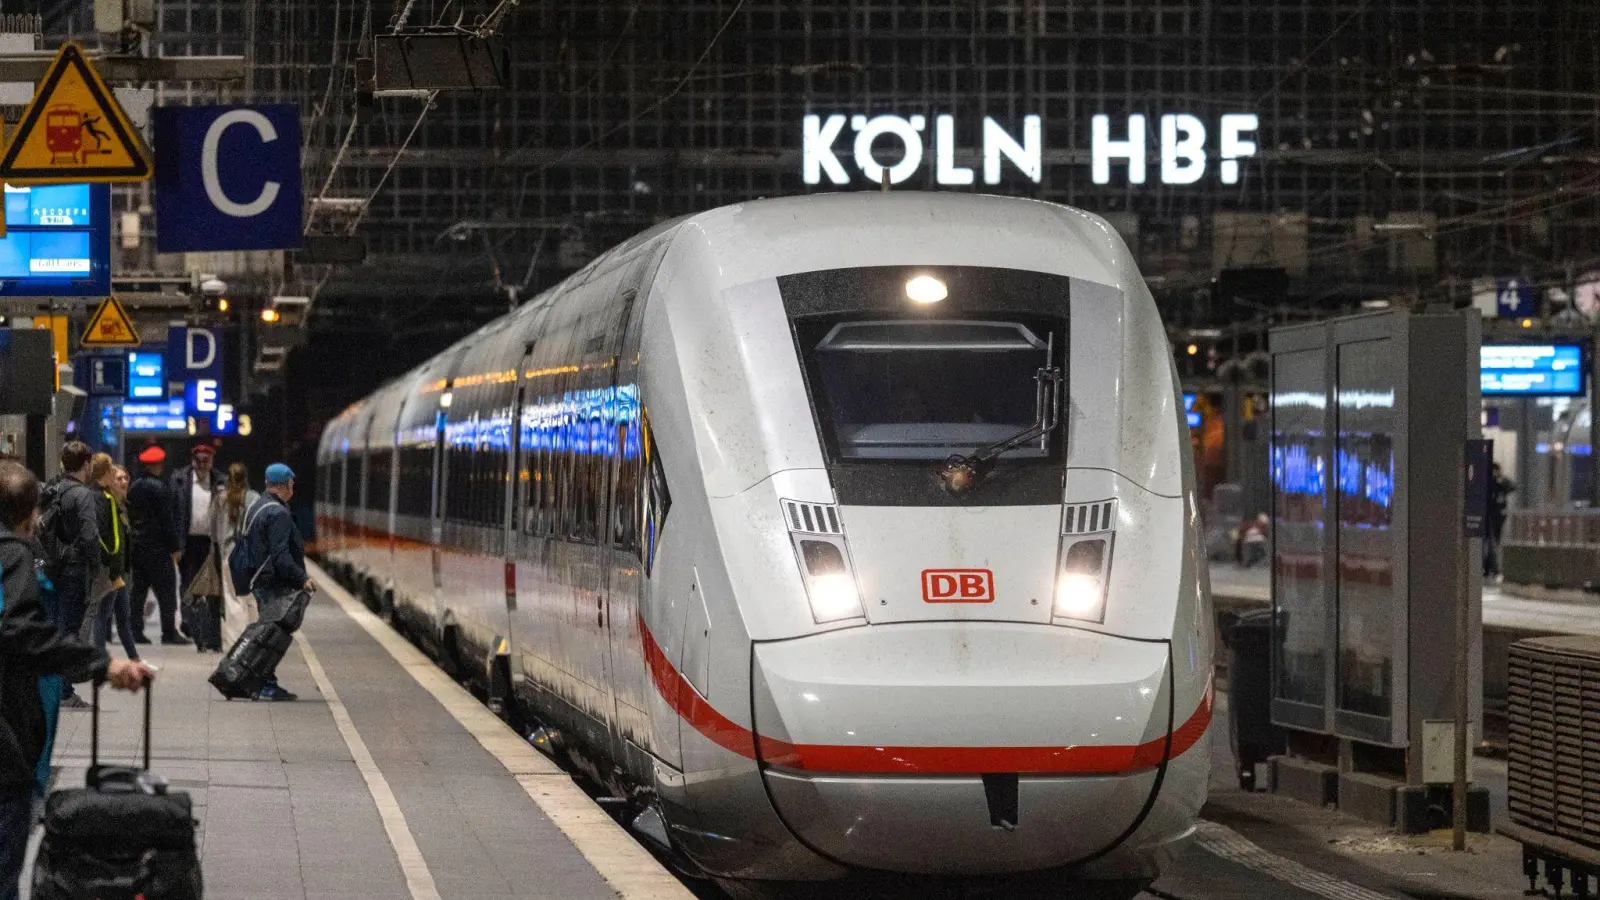 Wegen Bauarbeiten kommt es am Kölner Hauptbahnhof zu starken Einschränkungen für Reisende. (Foto: Thomas Banneyer/dpa)